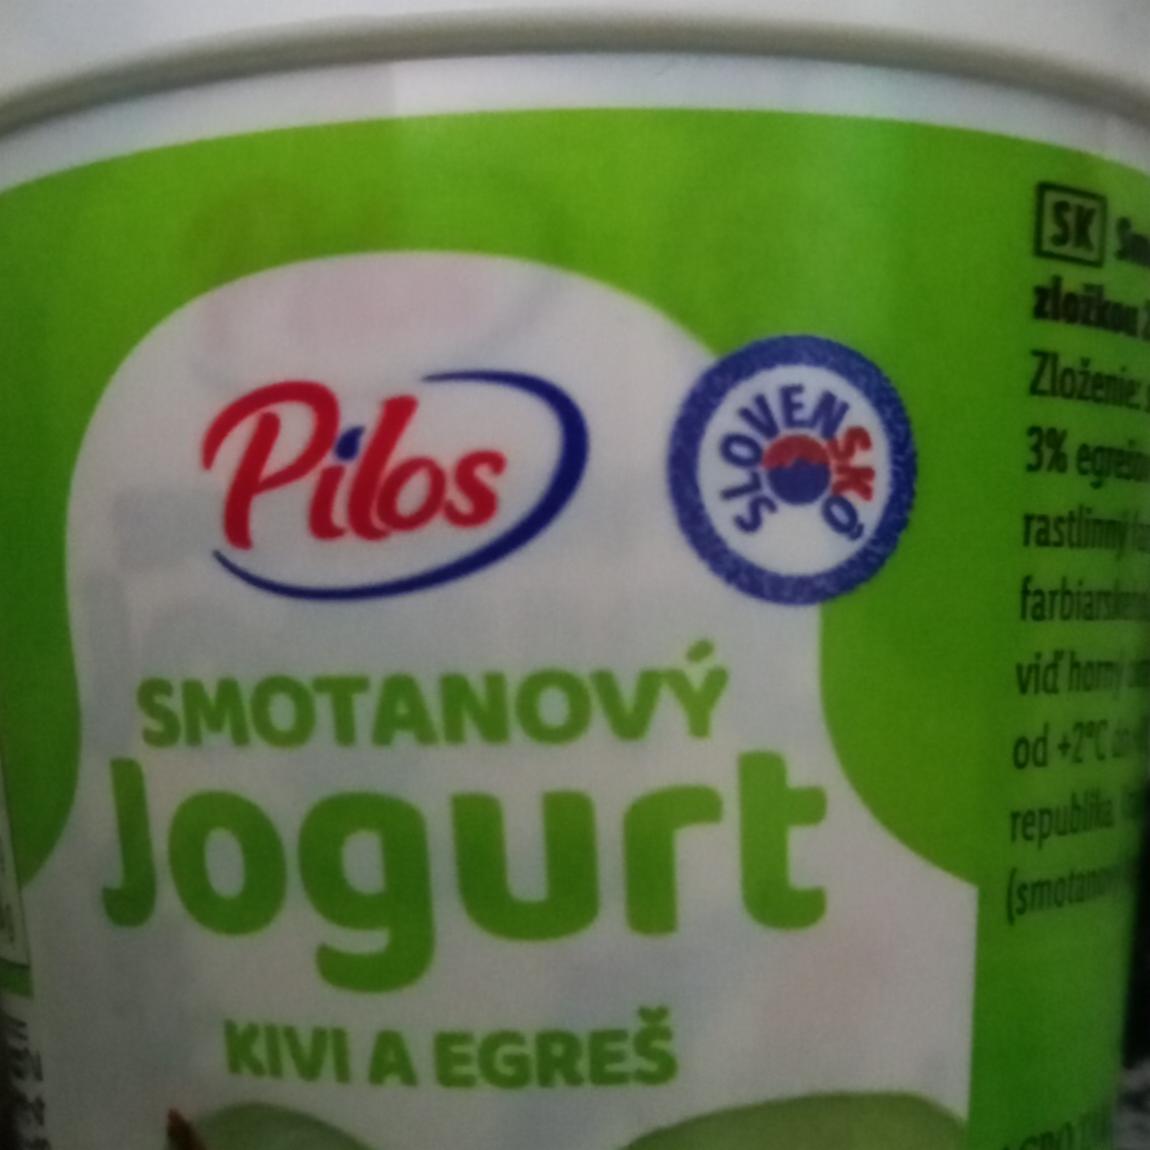 Fotografie - Smotanový jogurt Kivi a egreš Pilos